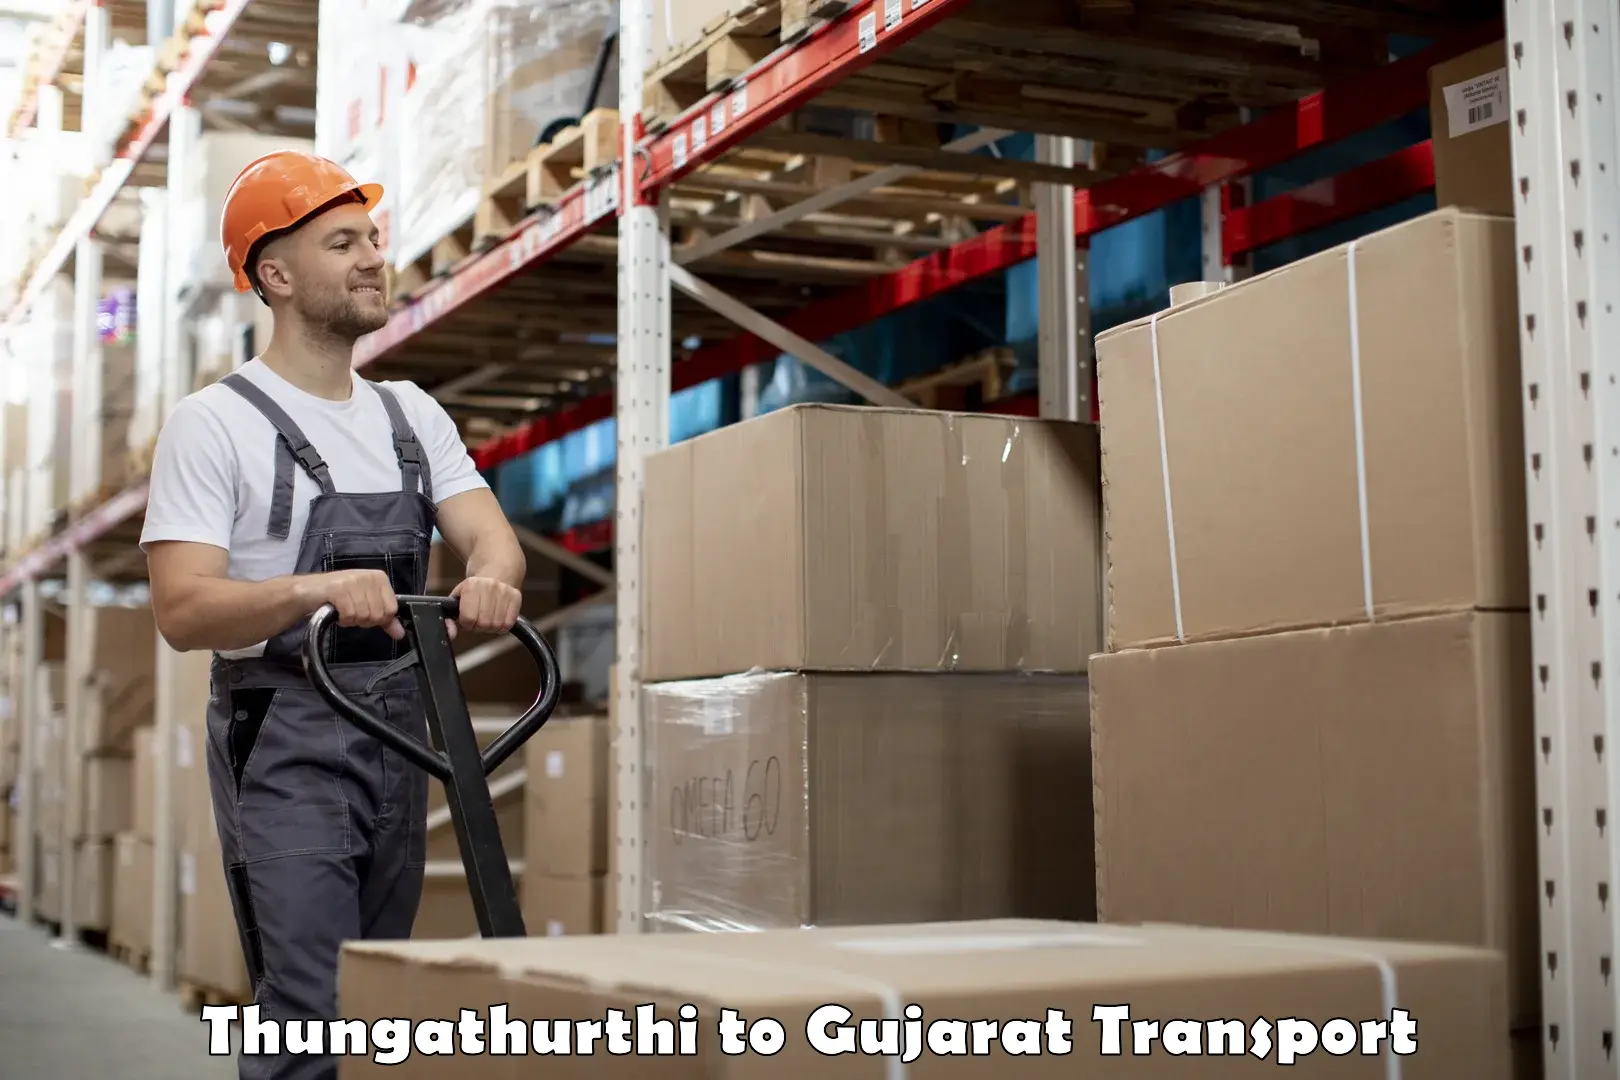 Luggage transport services Thungathurthi to Talaja